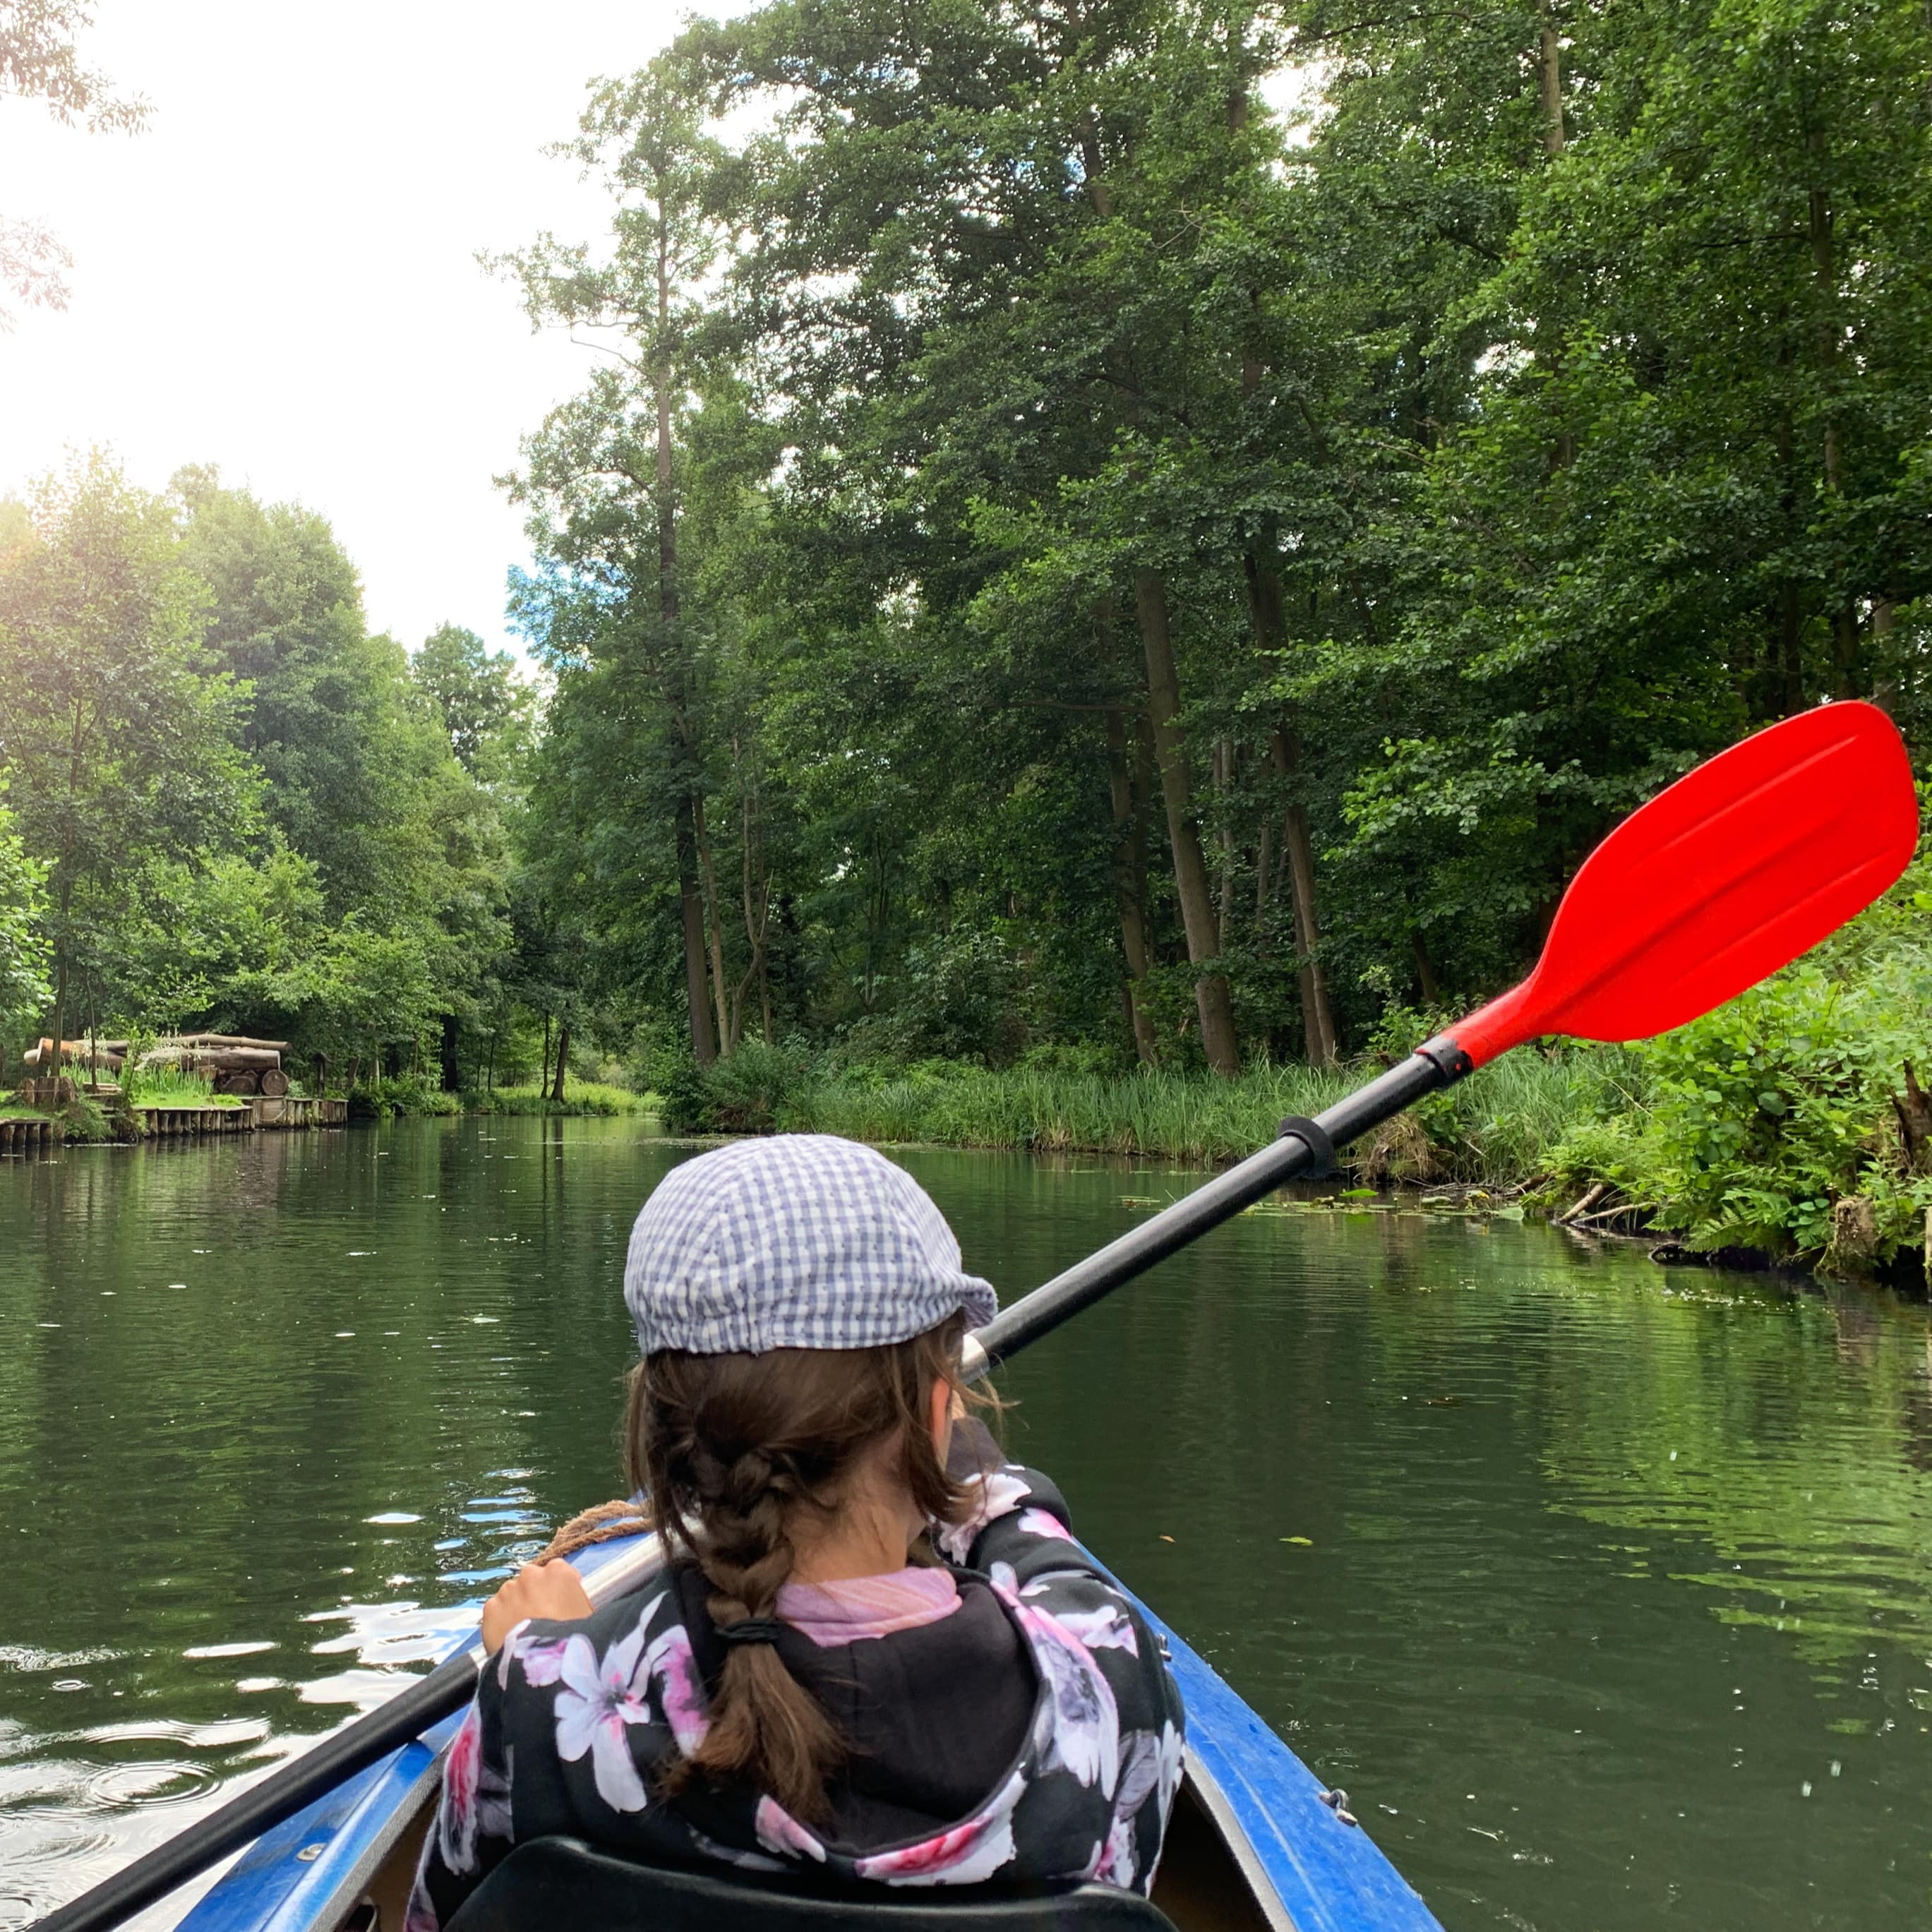 Rückenansicht: Ein Mädchen mit Zopf und karierter Mütze rudert in einem Kanu durchs Wasser. Links und rechts Bäume.